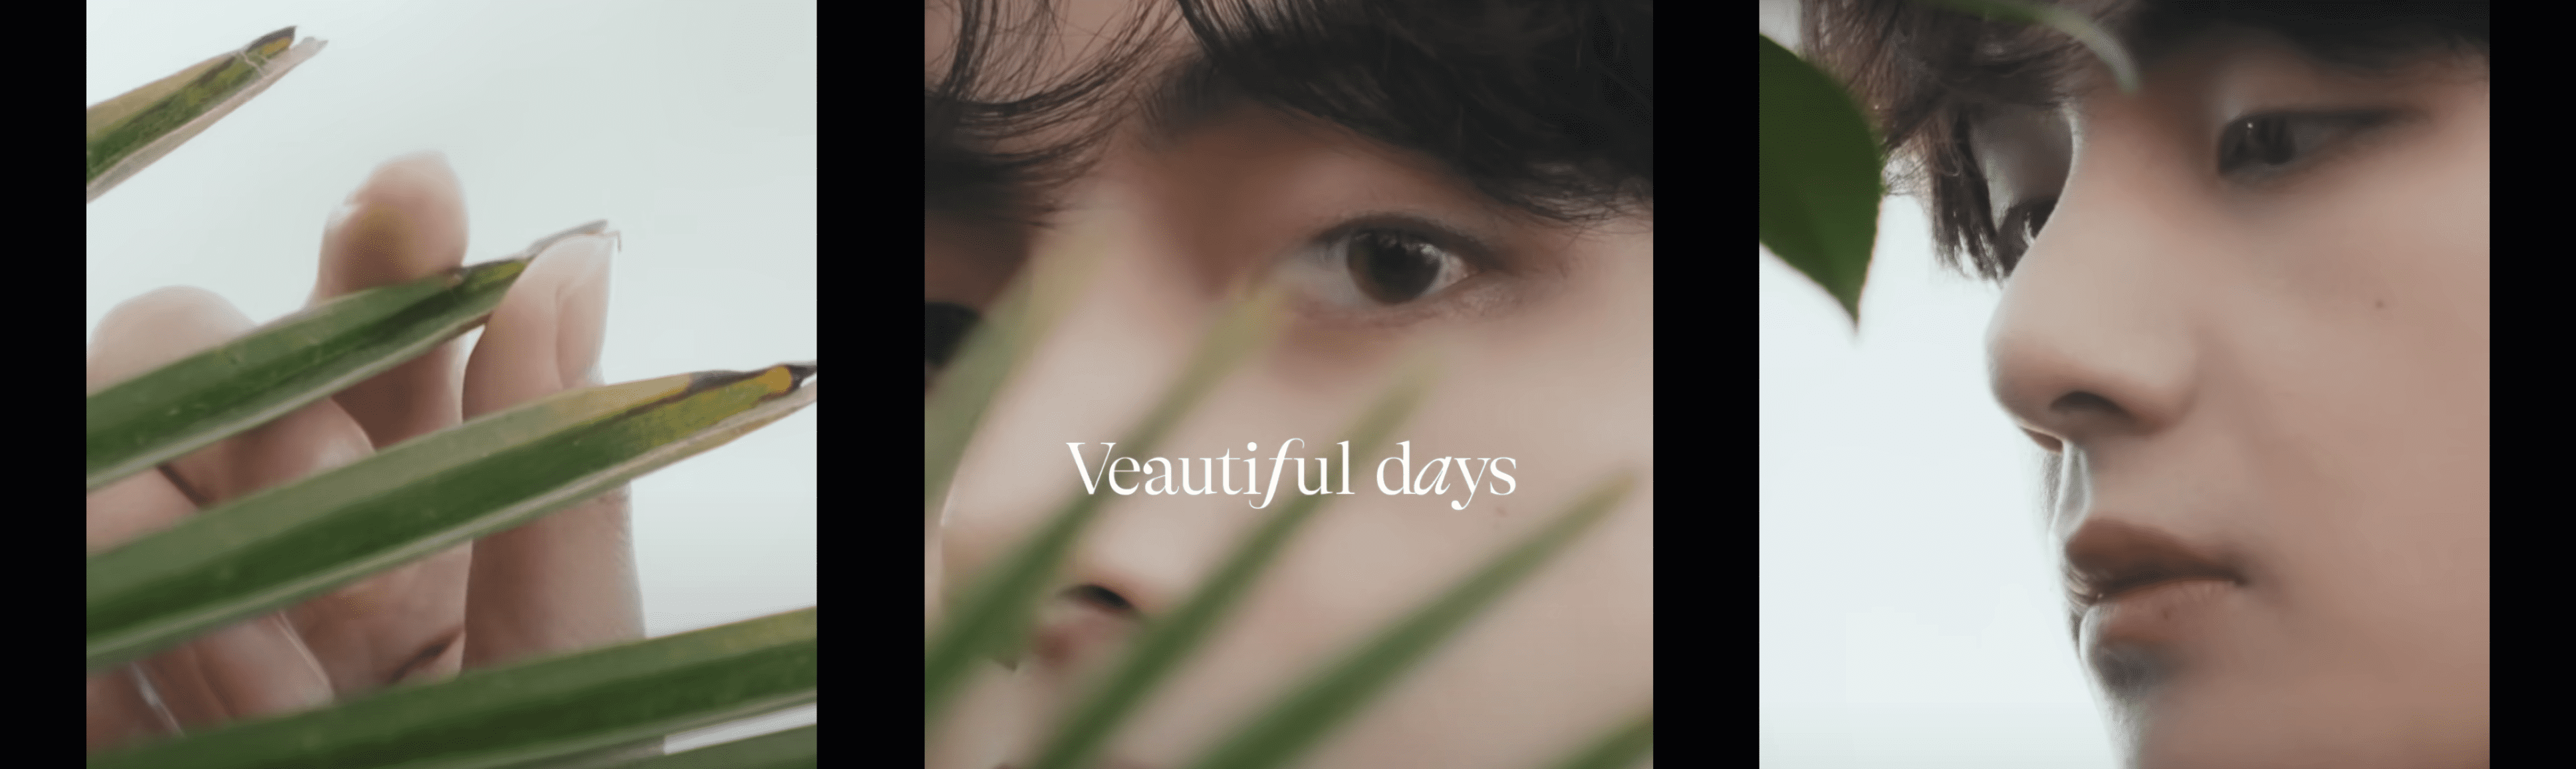 BTS V Photobook 'Veautiful Days' Mood Sampler 1 still cuts